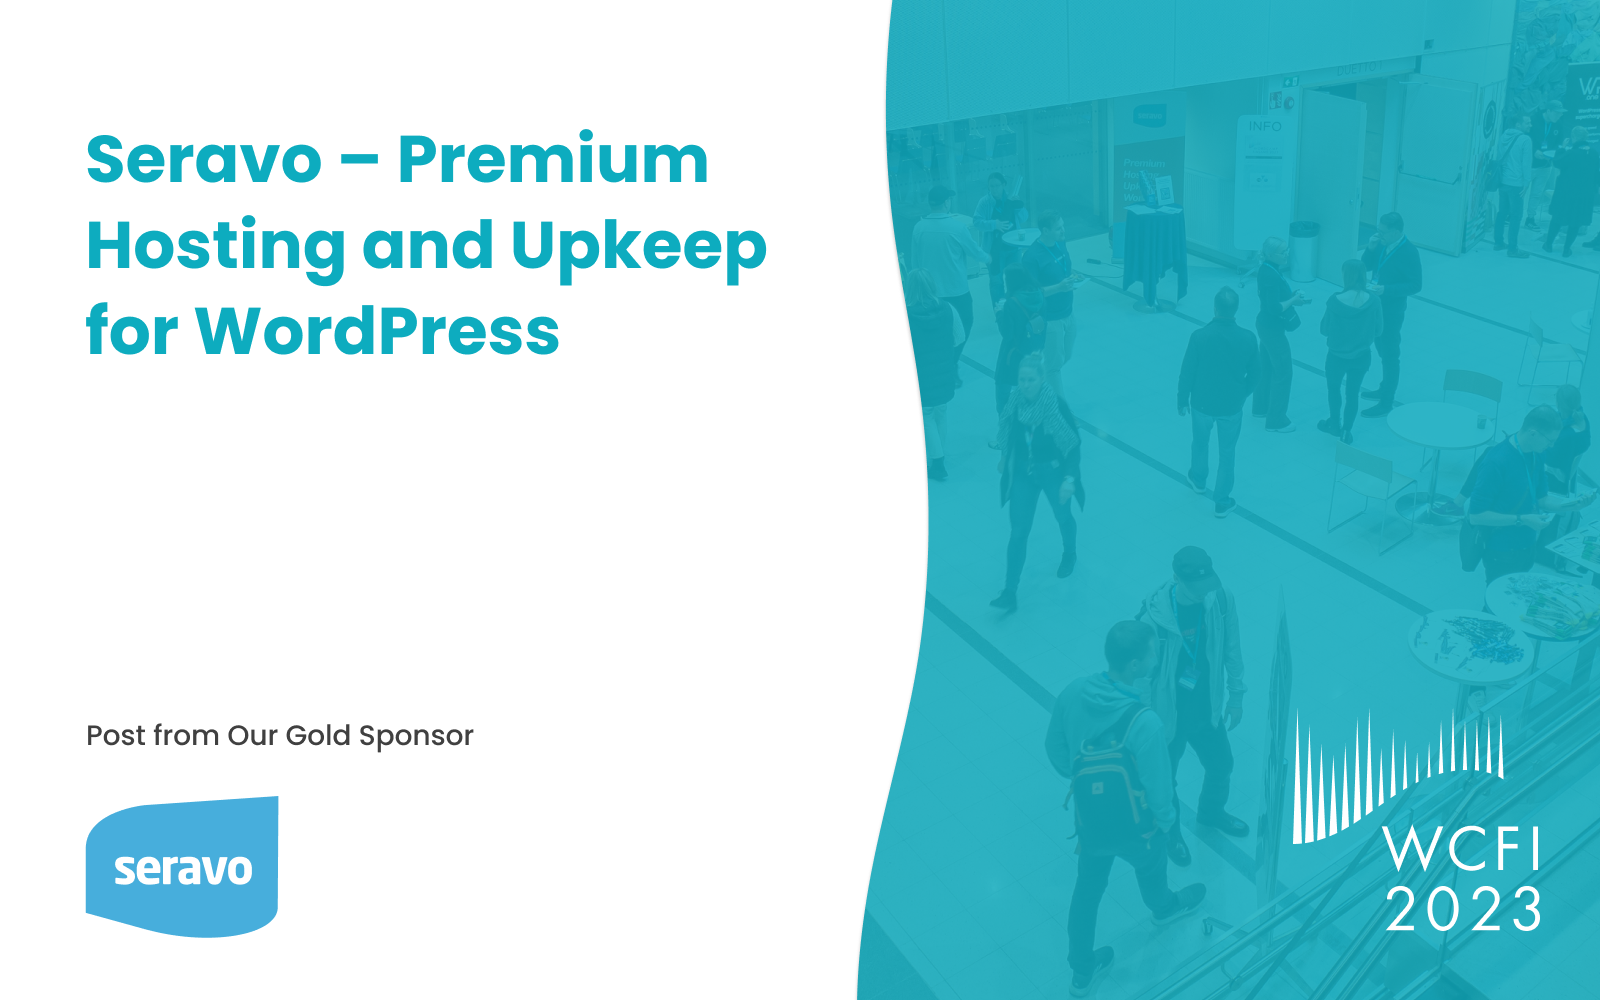 Seravo – Premium Hosting and Upkeep for WordPress